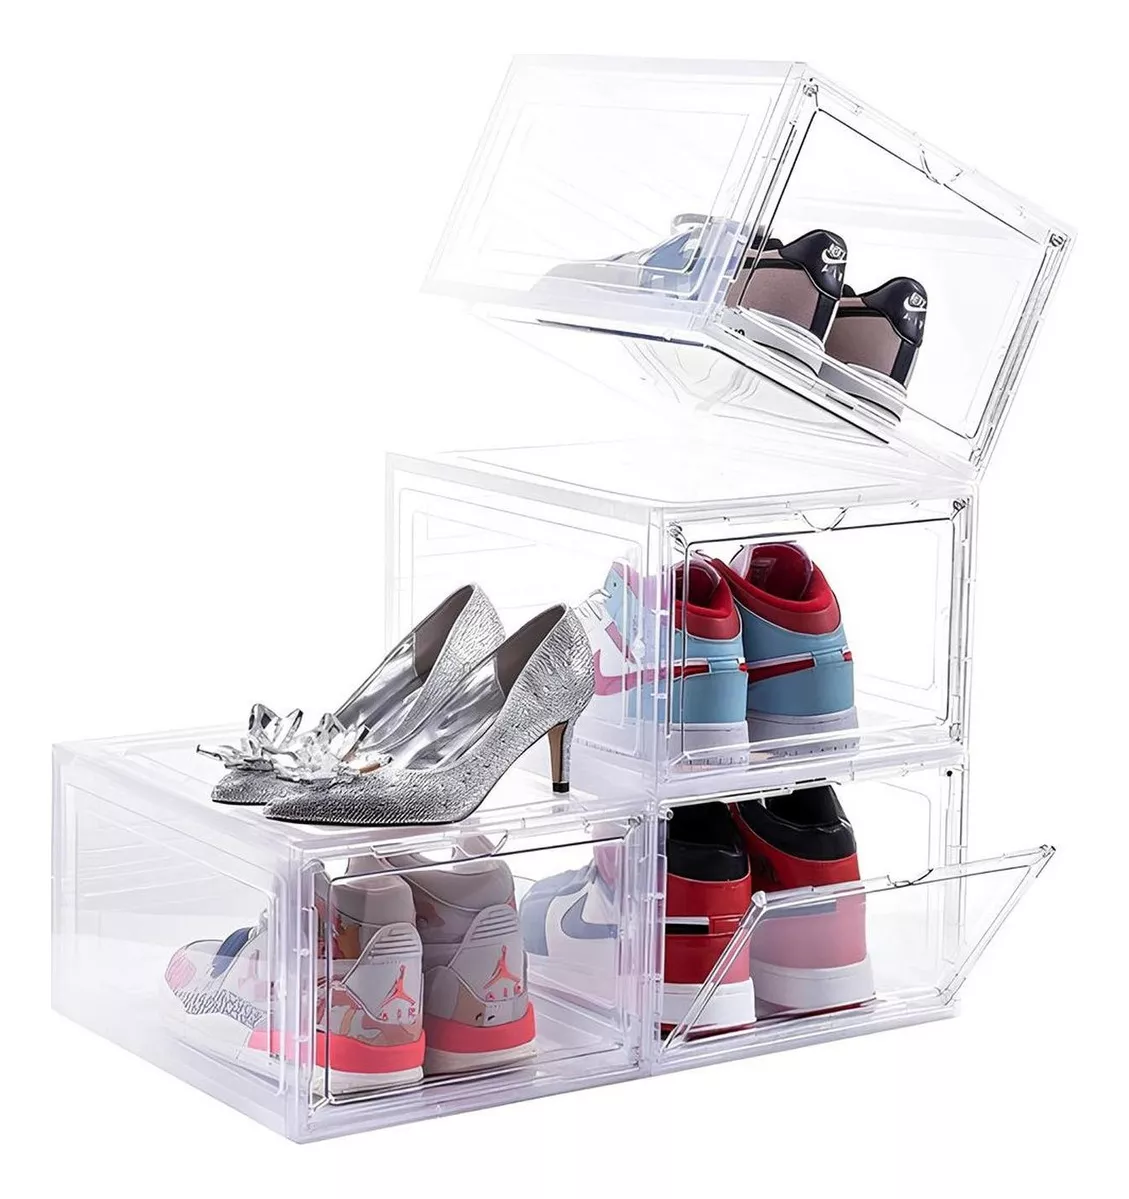 Tercera imagen para búsqueda de cajas organizadoras de zapatos